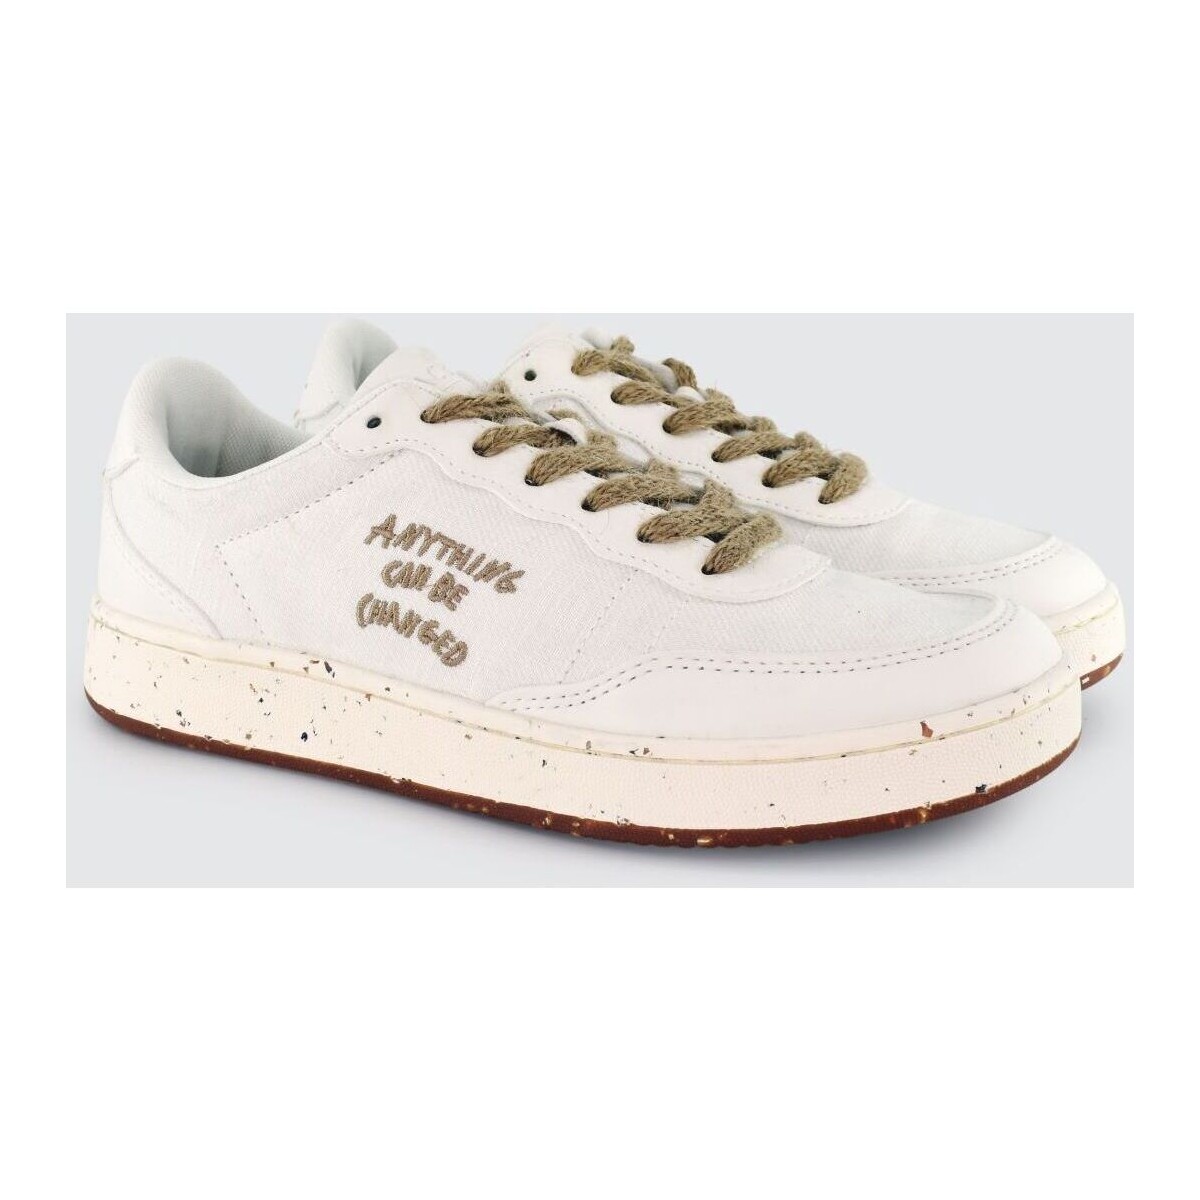 Schuhe Sneaker Acbc SHEH HEMP - EVERGREEN HEMP-200 WHITE Weiss